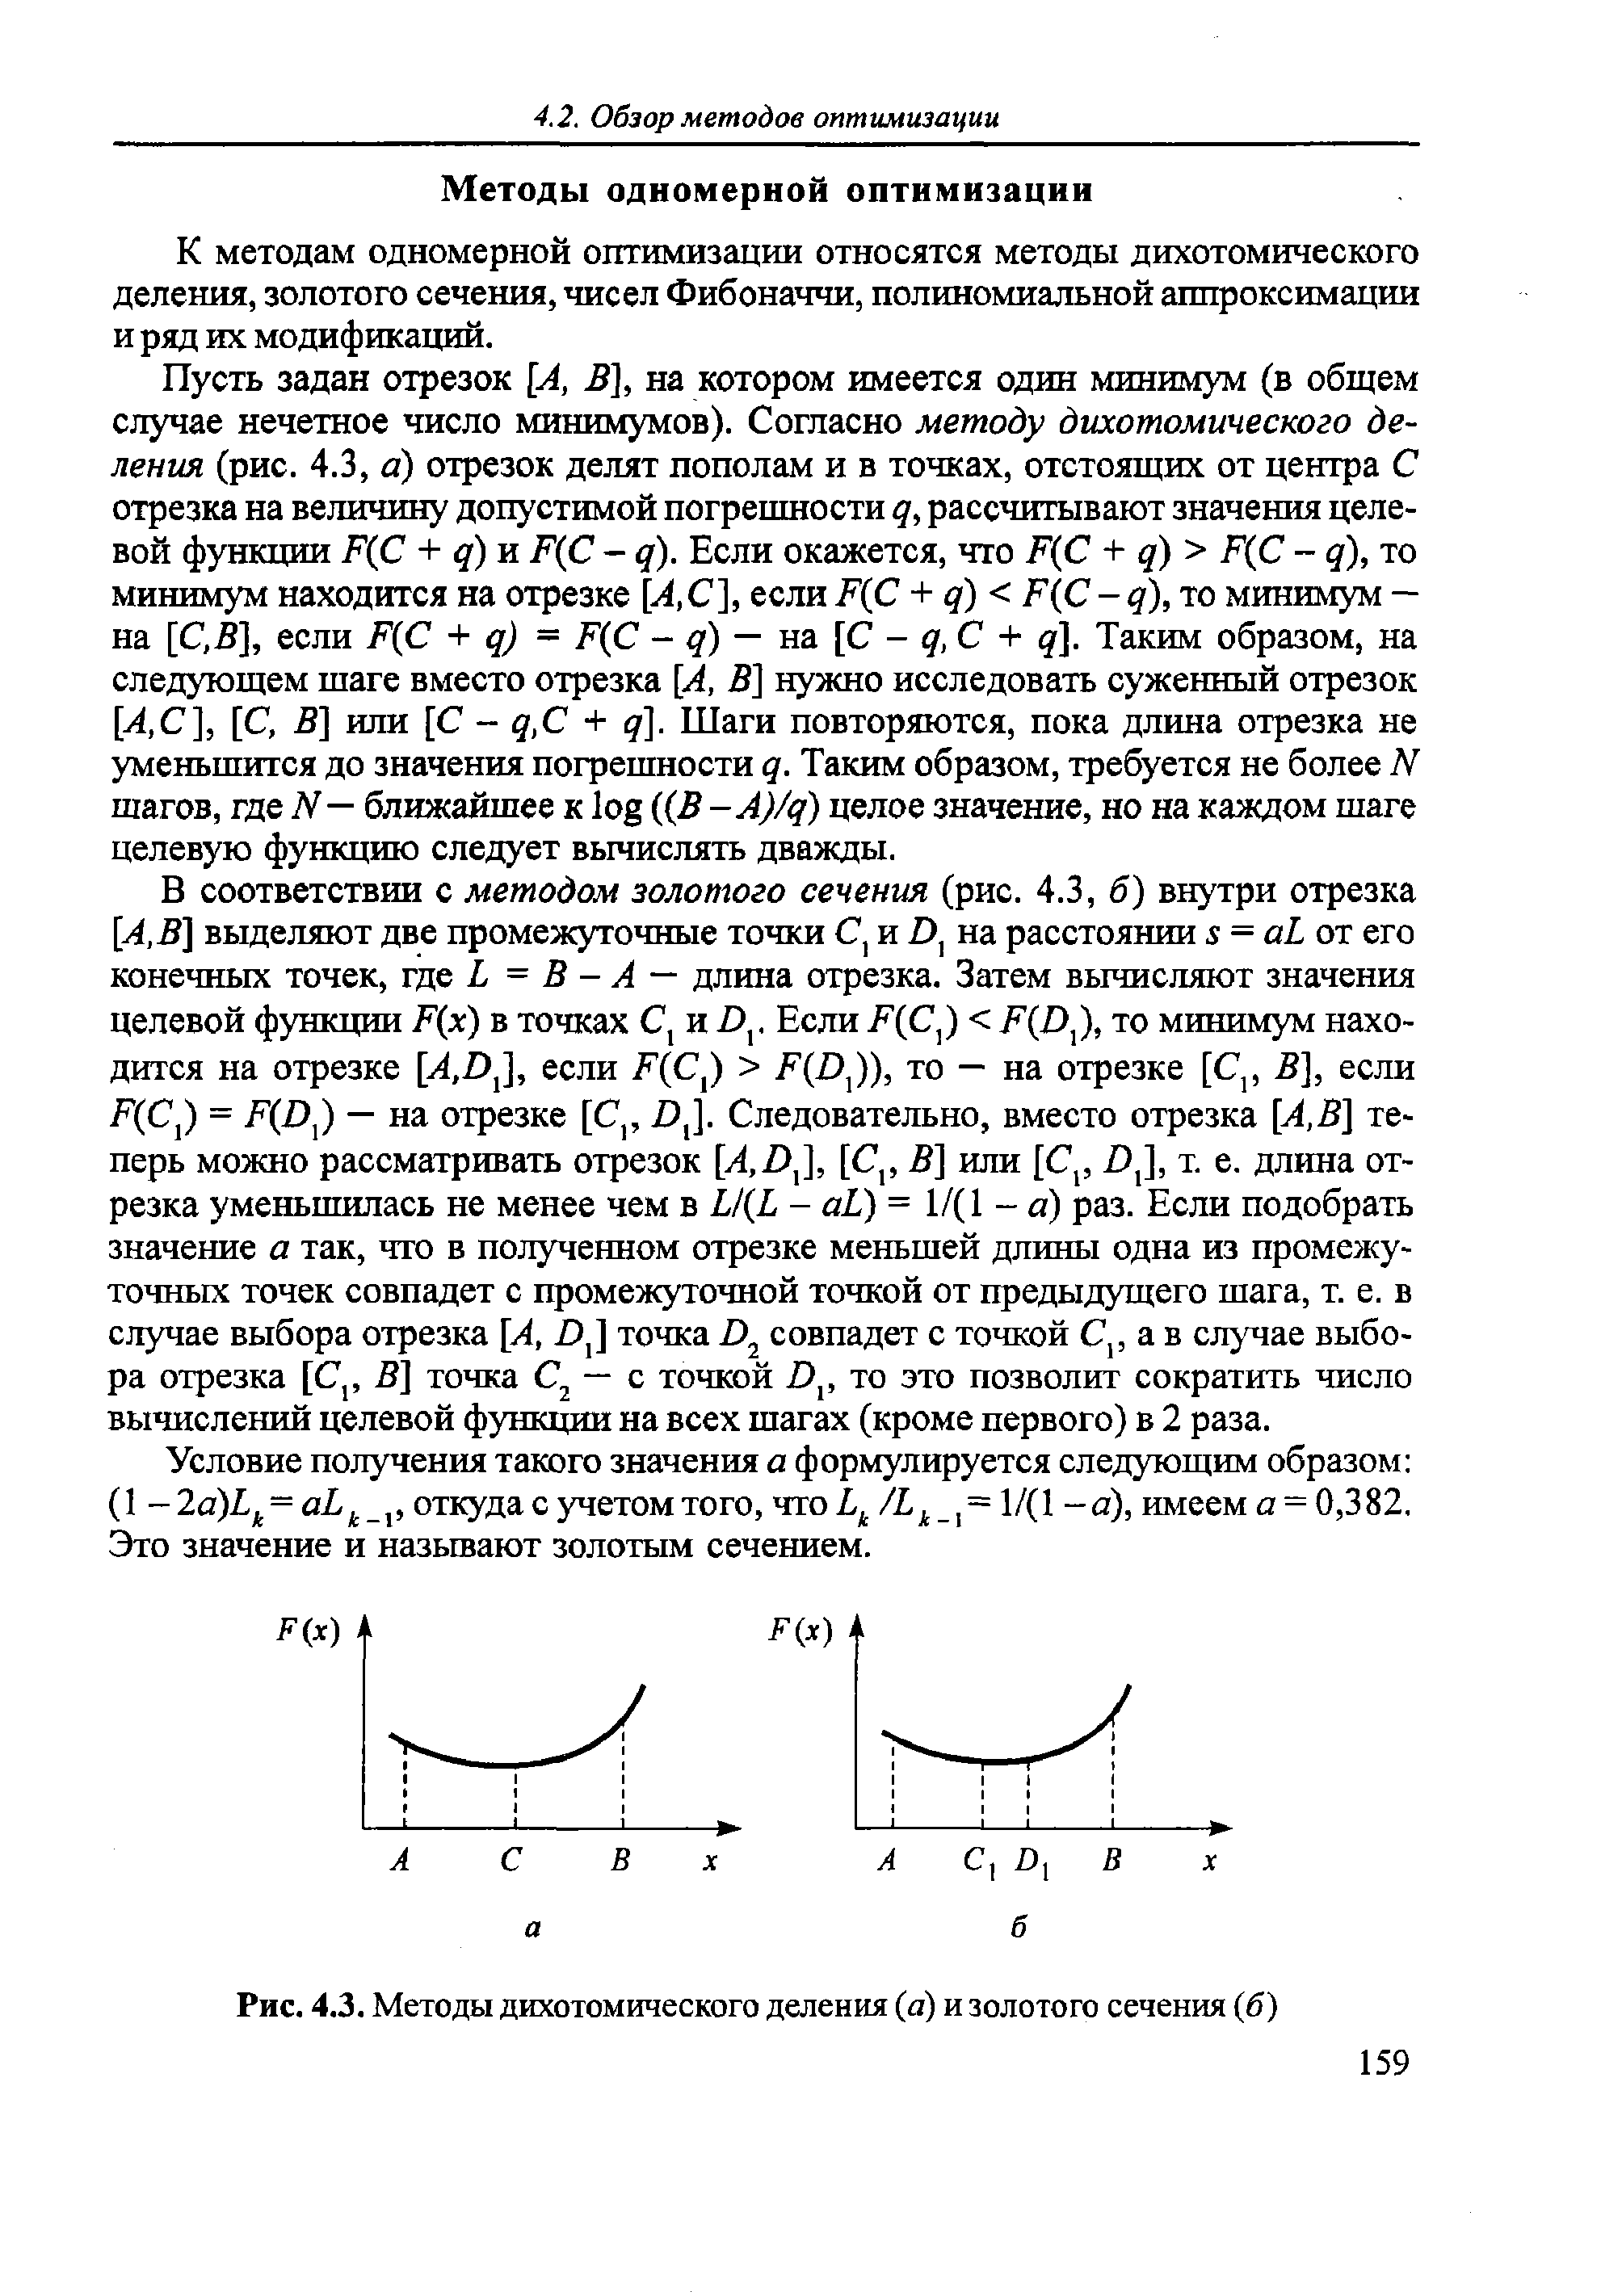 Рис. 4.3. Методы дихотомического деления (а) и золотого сечения (б)
